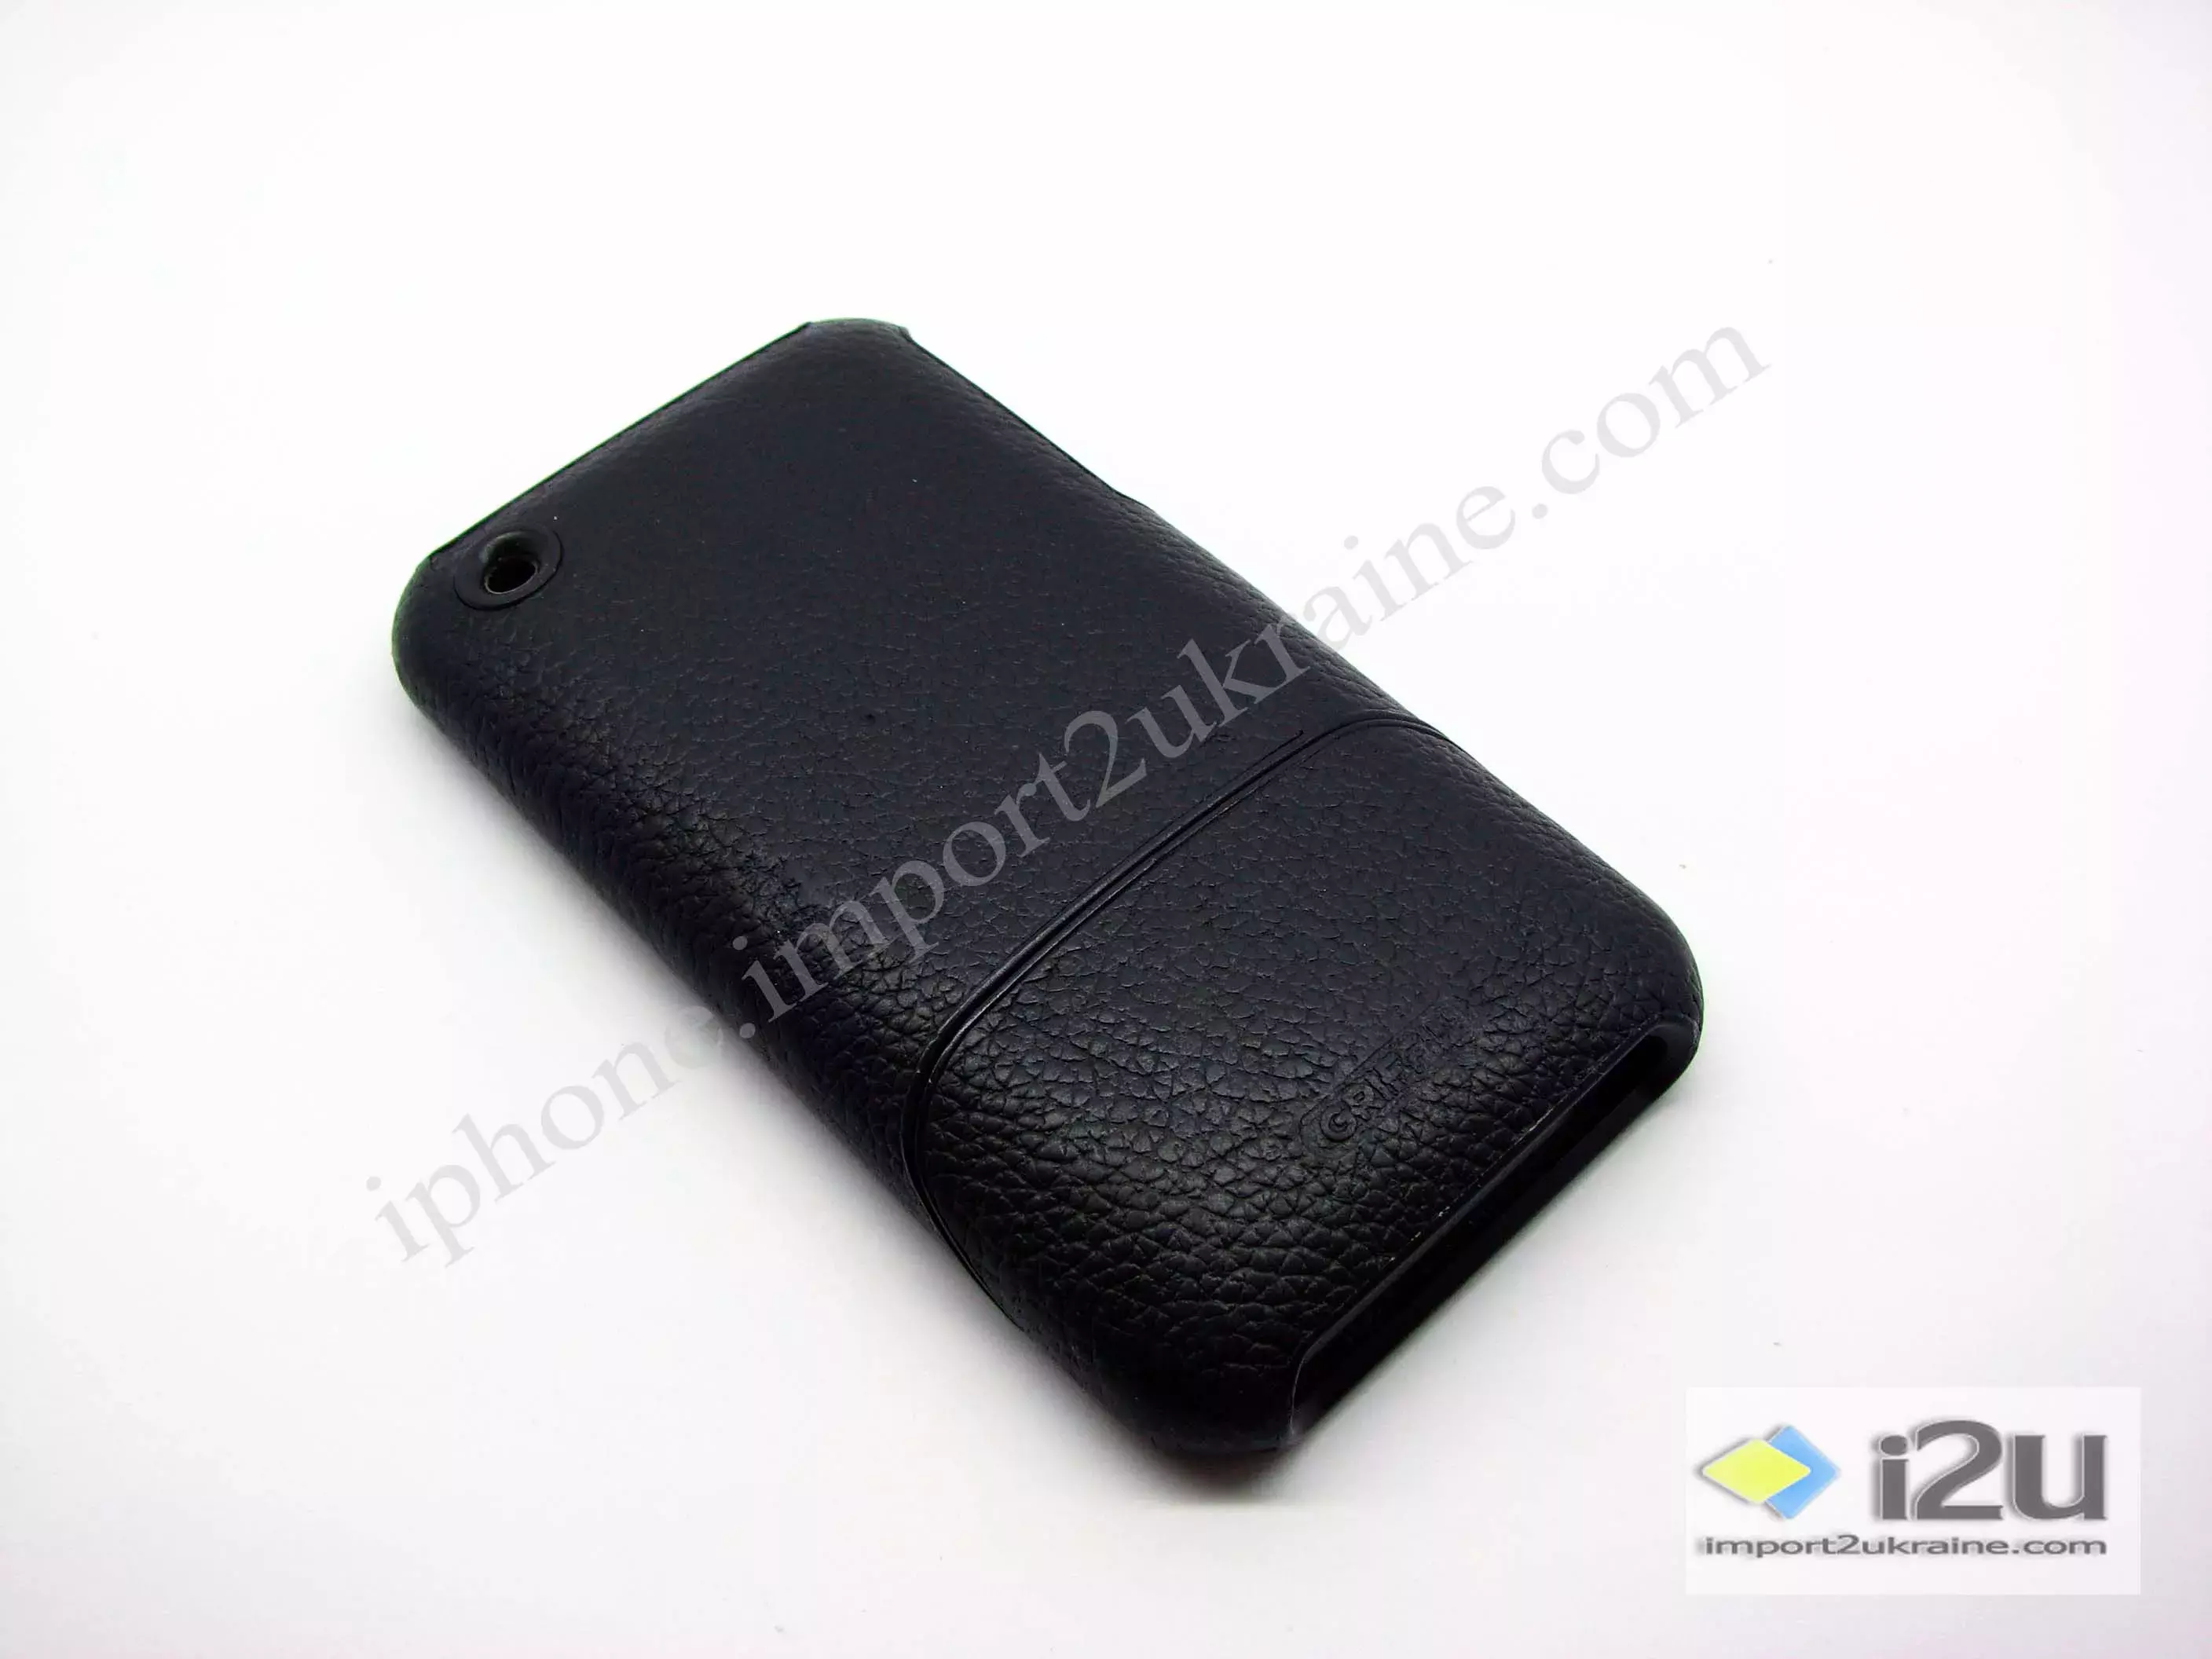 Защитный чехол для задней крышки iPhone - черный цвет. 